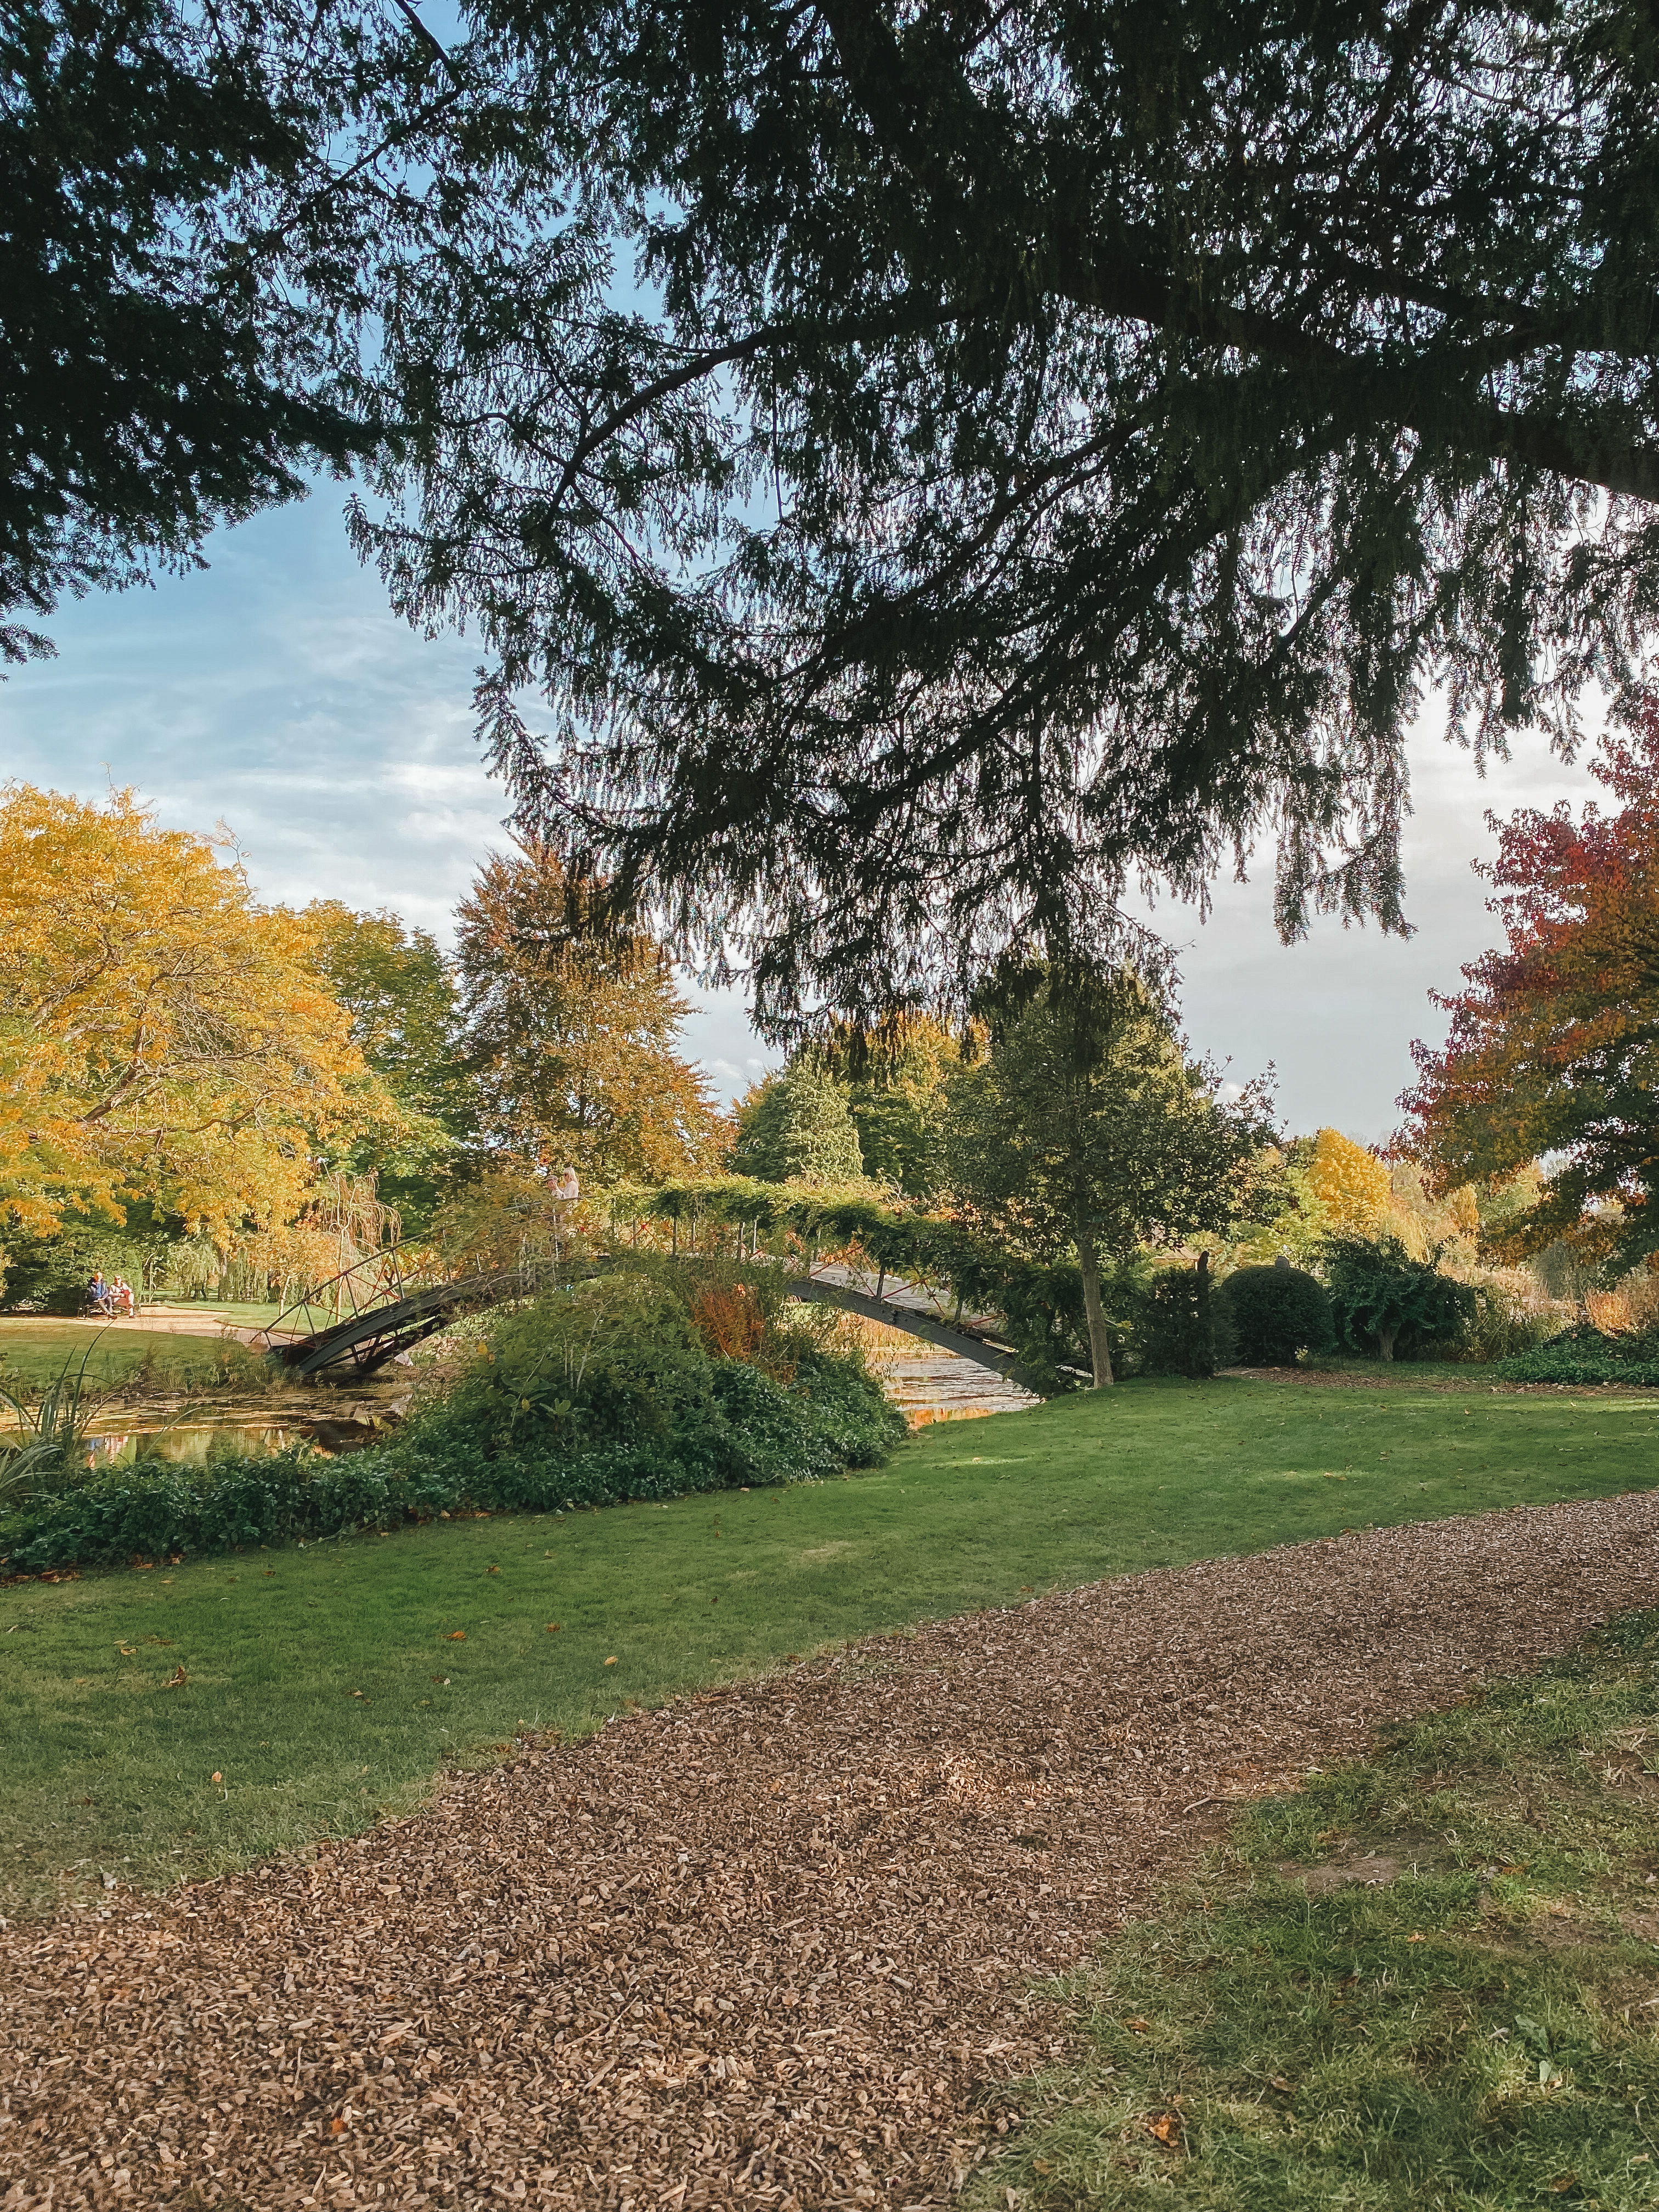 Autumn Colours @ Chippenham Park Gardens